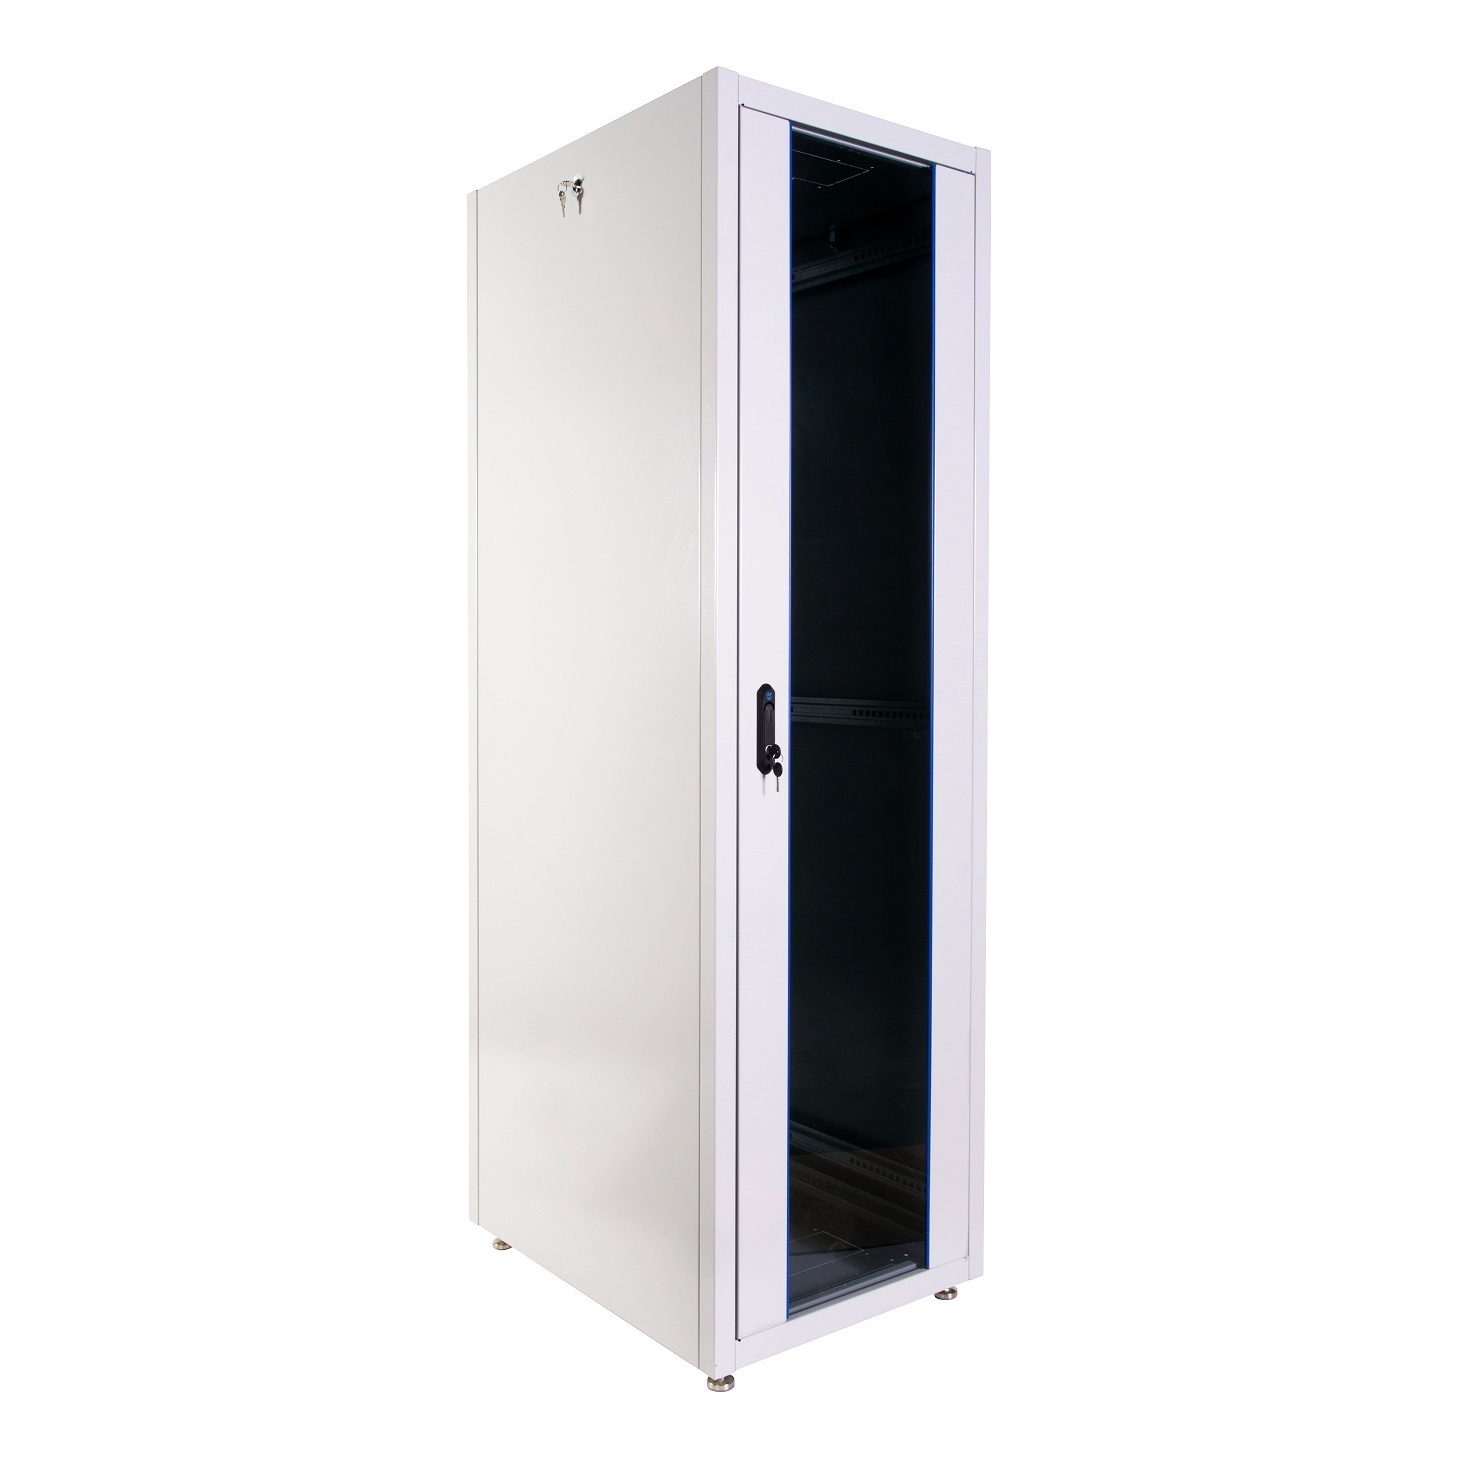 ЦМО ШТК-Э-42.6.6-13АА Шкаф телекоммуникационный напольный ЭКОНОМ 42U (600 × 600) дверь стекло, дверь металл